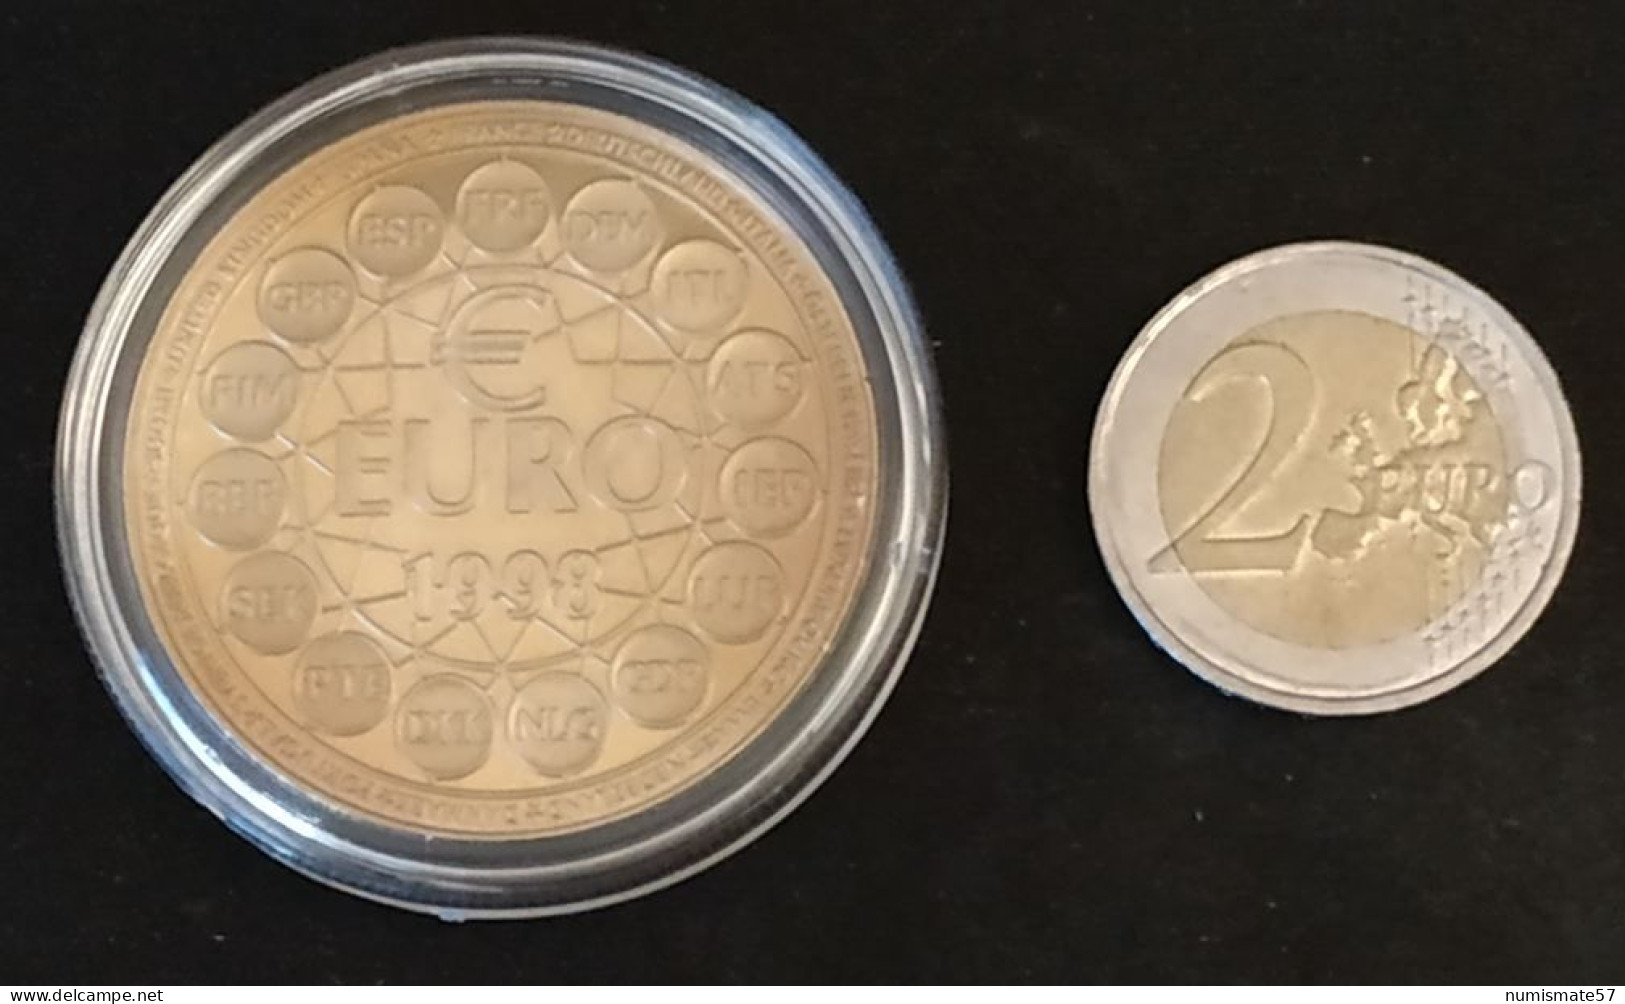 ESSAI - 10 Euros Essai 1998 - Bronze Florentin - Proeven